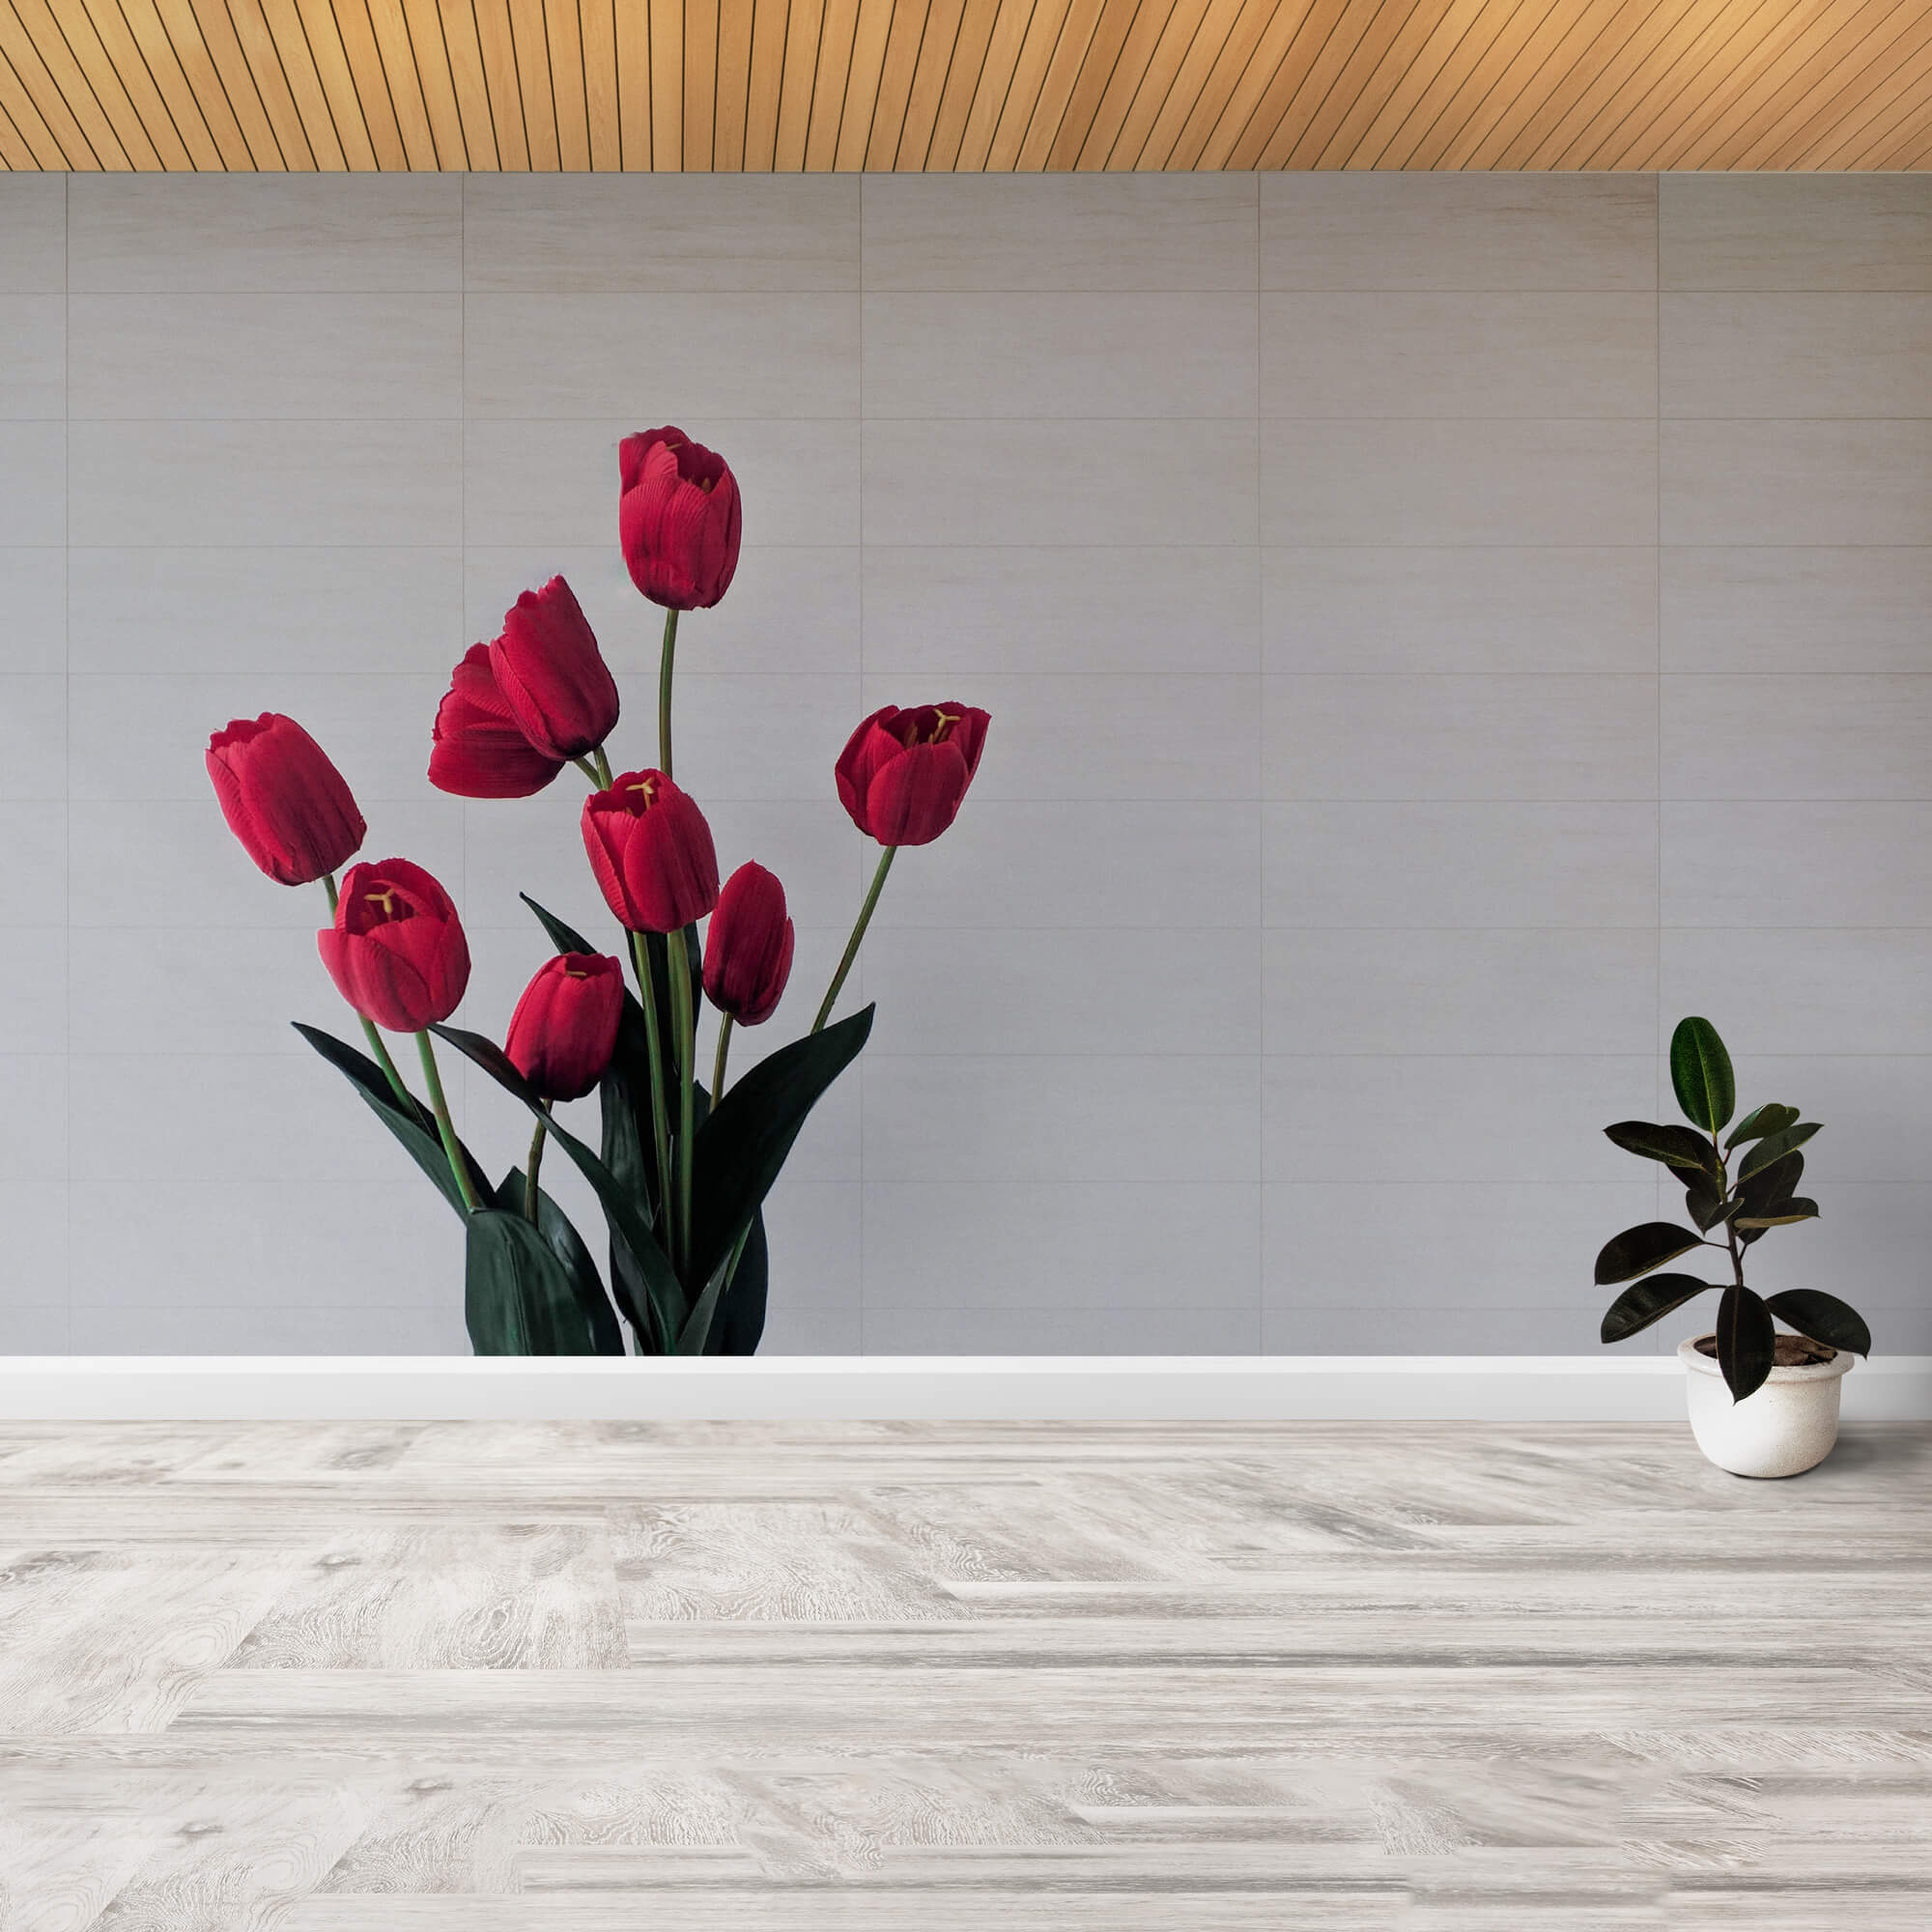 Imagen de la pared de un estudio de yoga, rotulada con un vinilo de un ramo de unos tulipanes rojos sobre un fondo liso de color gris claro.